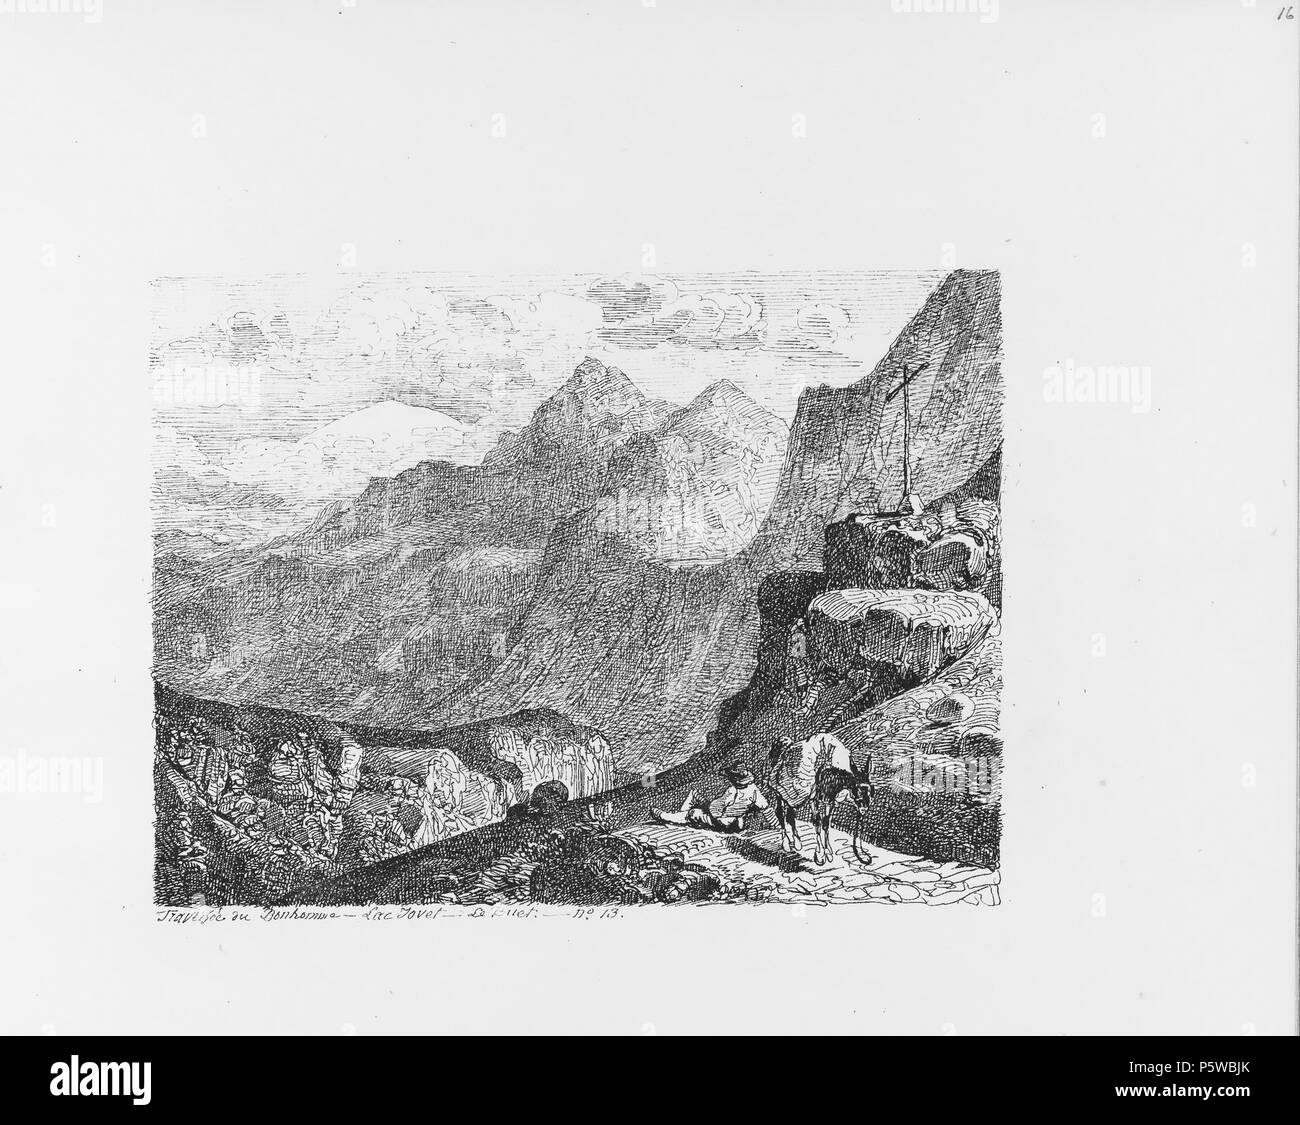 322 CH-NB-Voyage Autour du Mont-Blanc dans les vallées d'Hérens de Zermatt et au Grimsel 1843 - nbdig -19161-015 Stockfoto